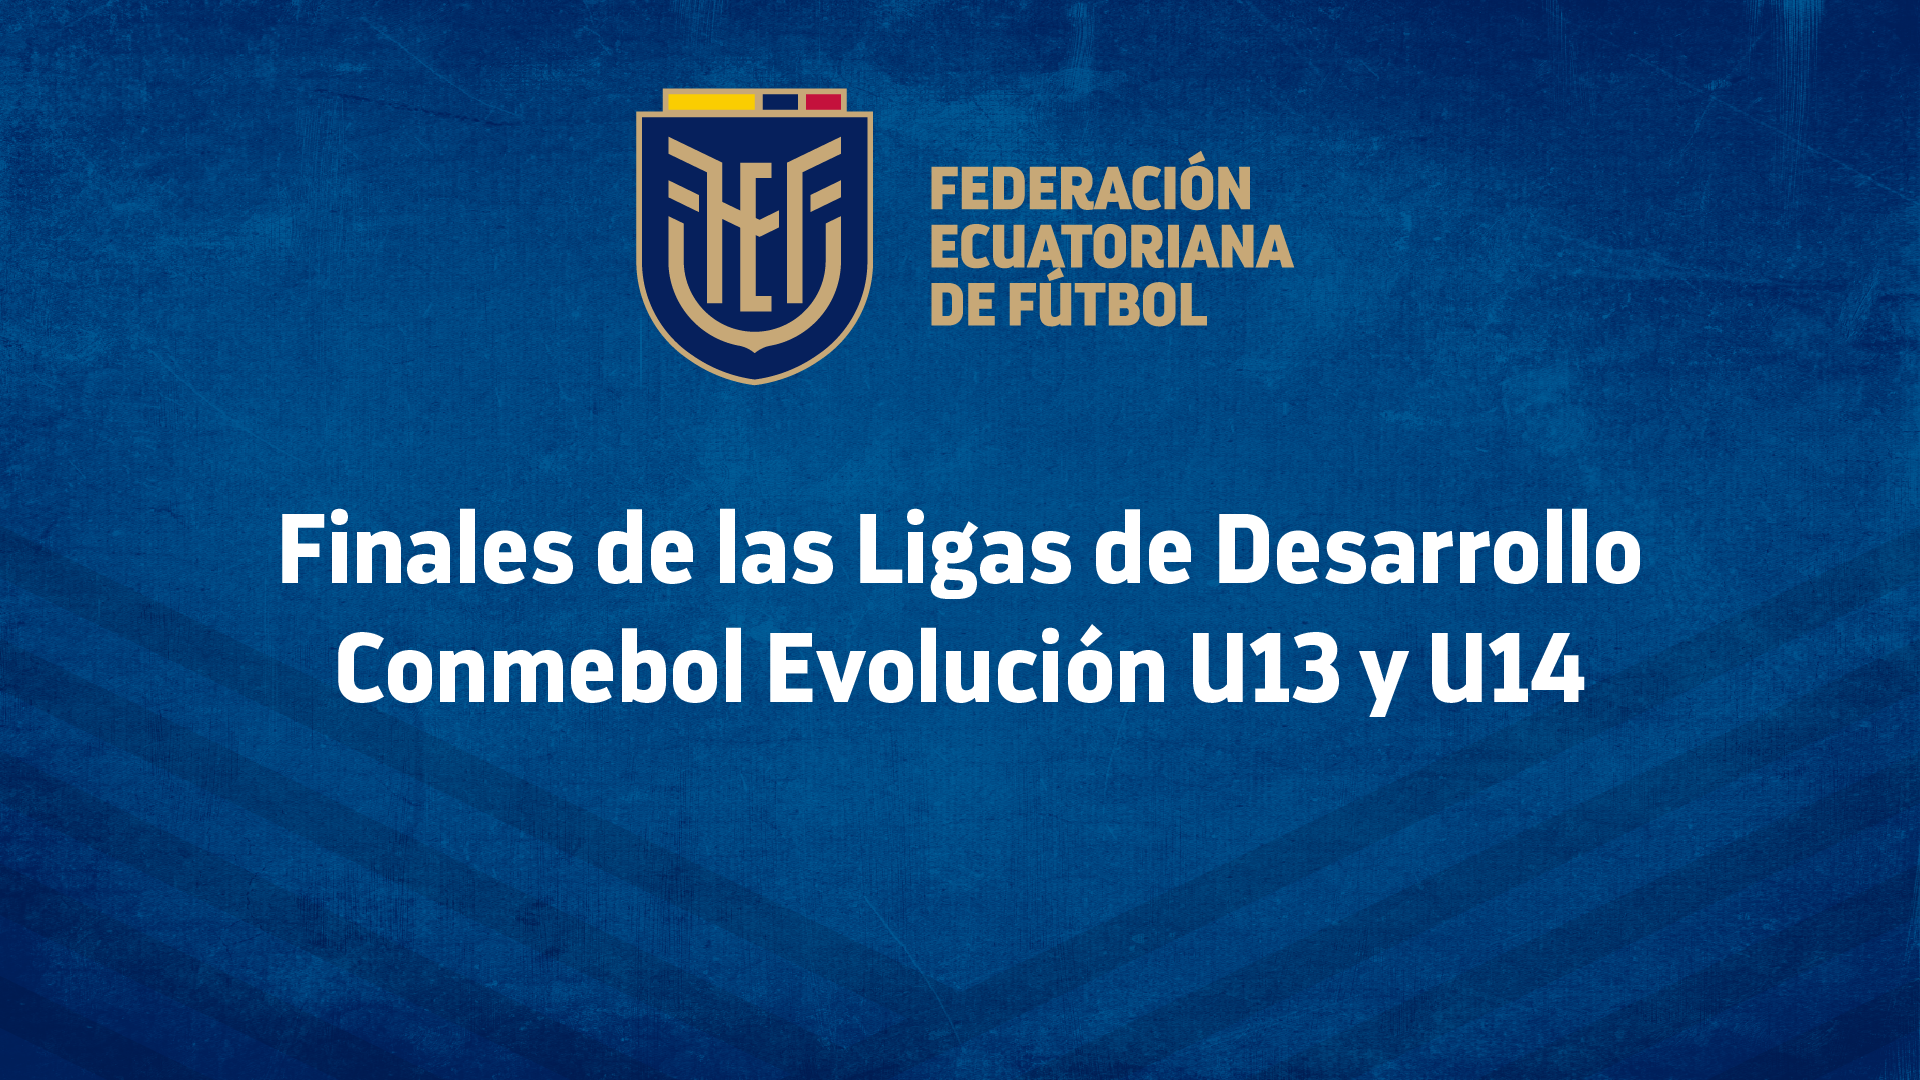 Finales de las Ligas de Desarrollo Conmebol Evolución U13 y U14